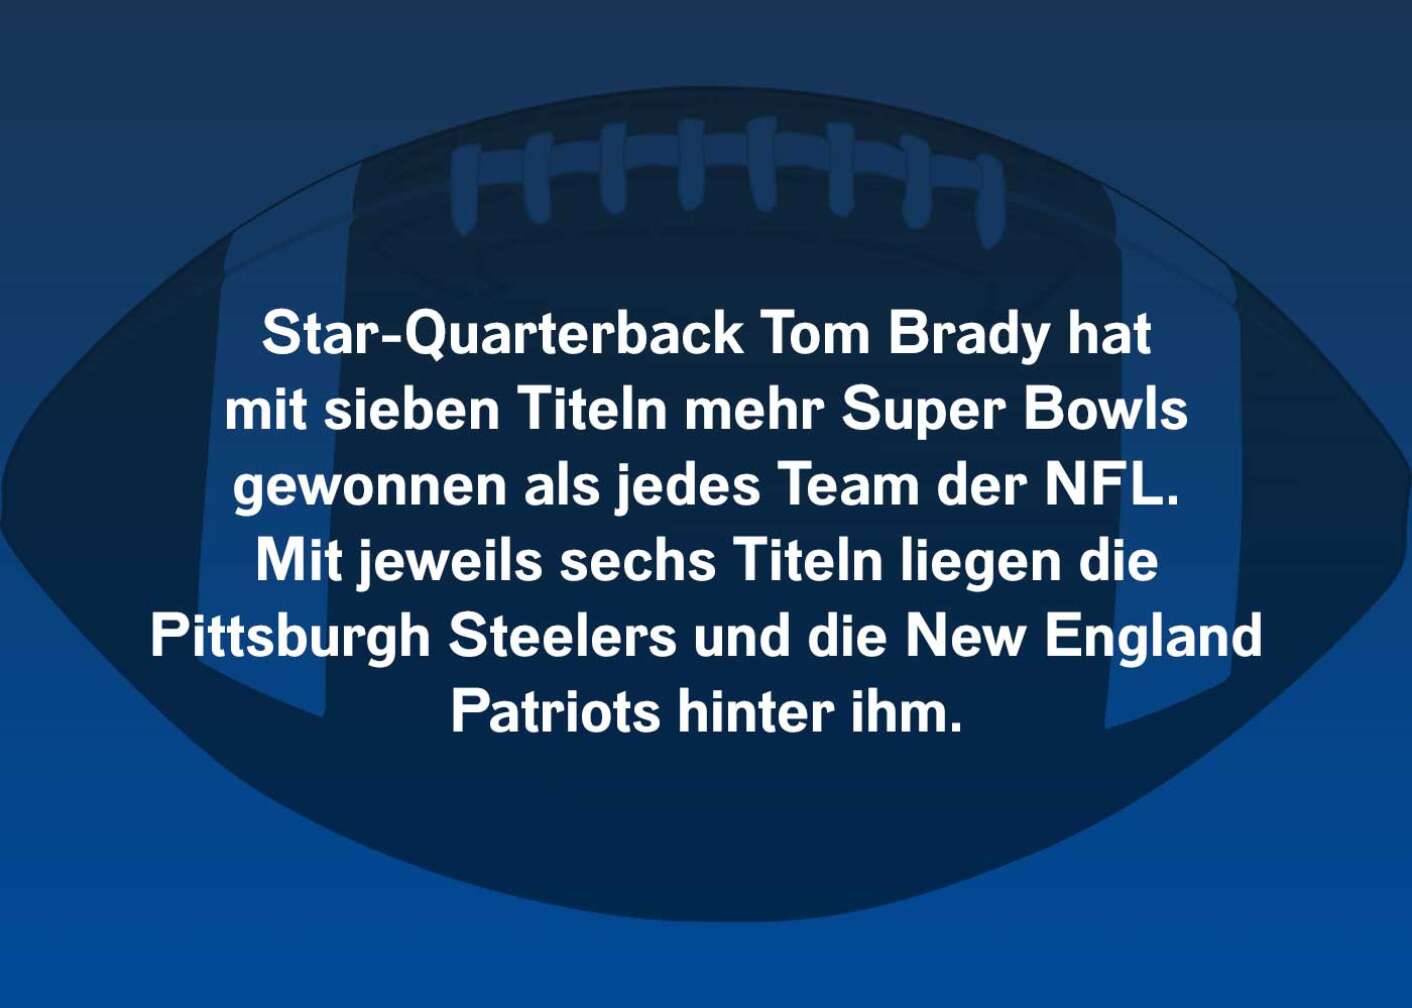 Star-Quarterback Tom Brady hat mit sieben Titeln mehr Super Bowls gewonnen, als jedes Team der NFL. Mit jeweils sechs Titeln liegen die Pittsburgh Steelers und die New England Patriots hinter ihm.